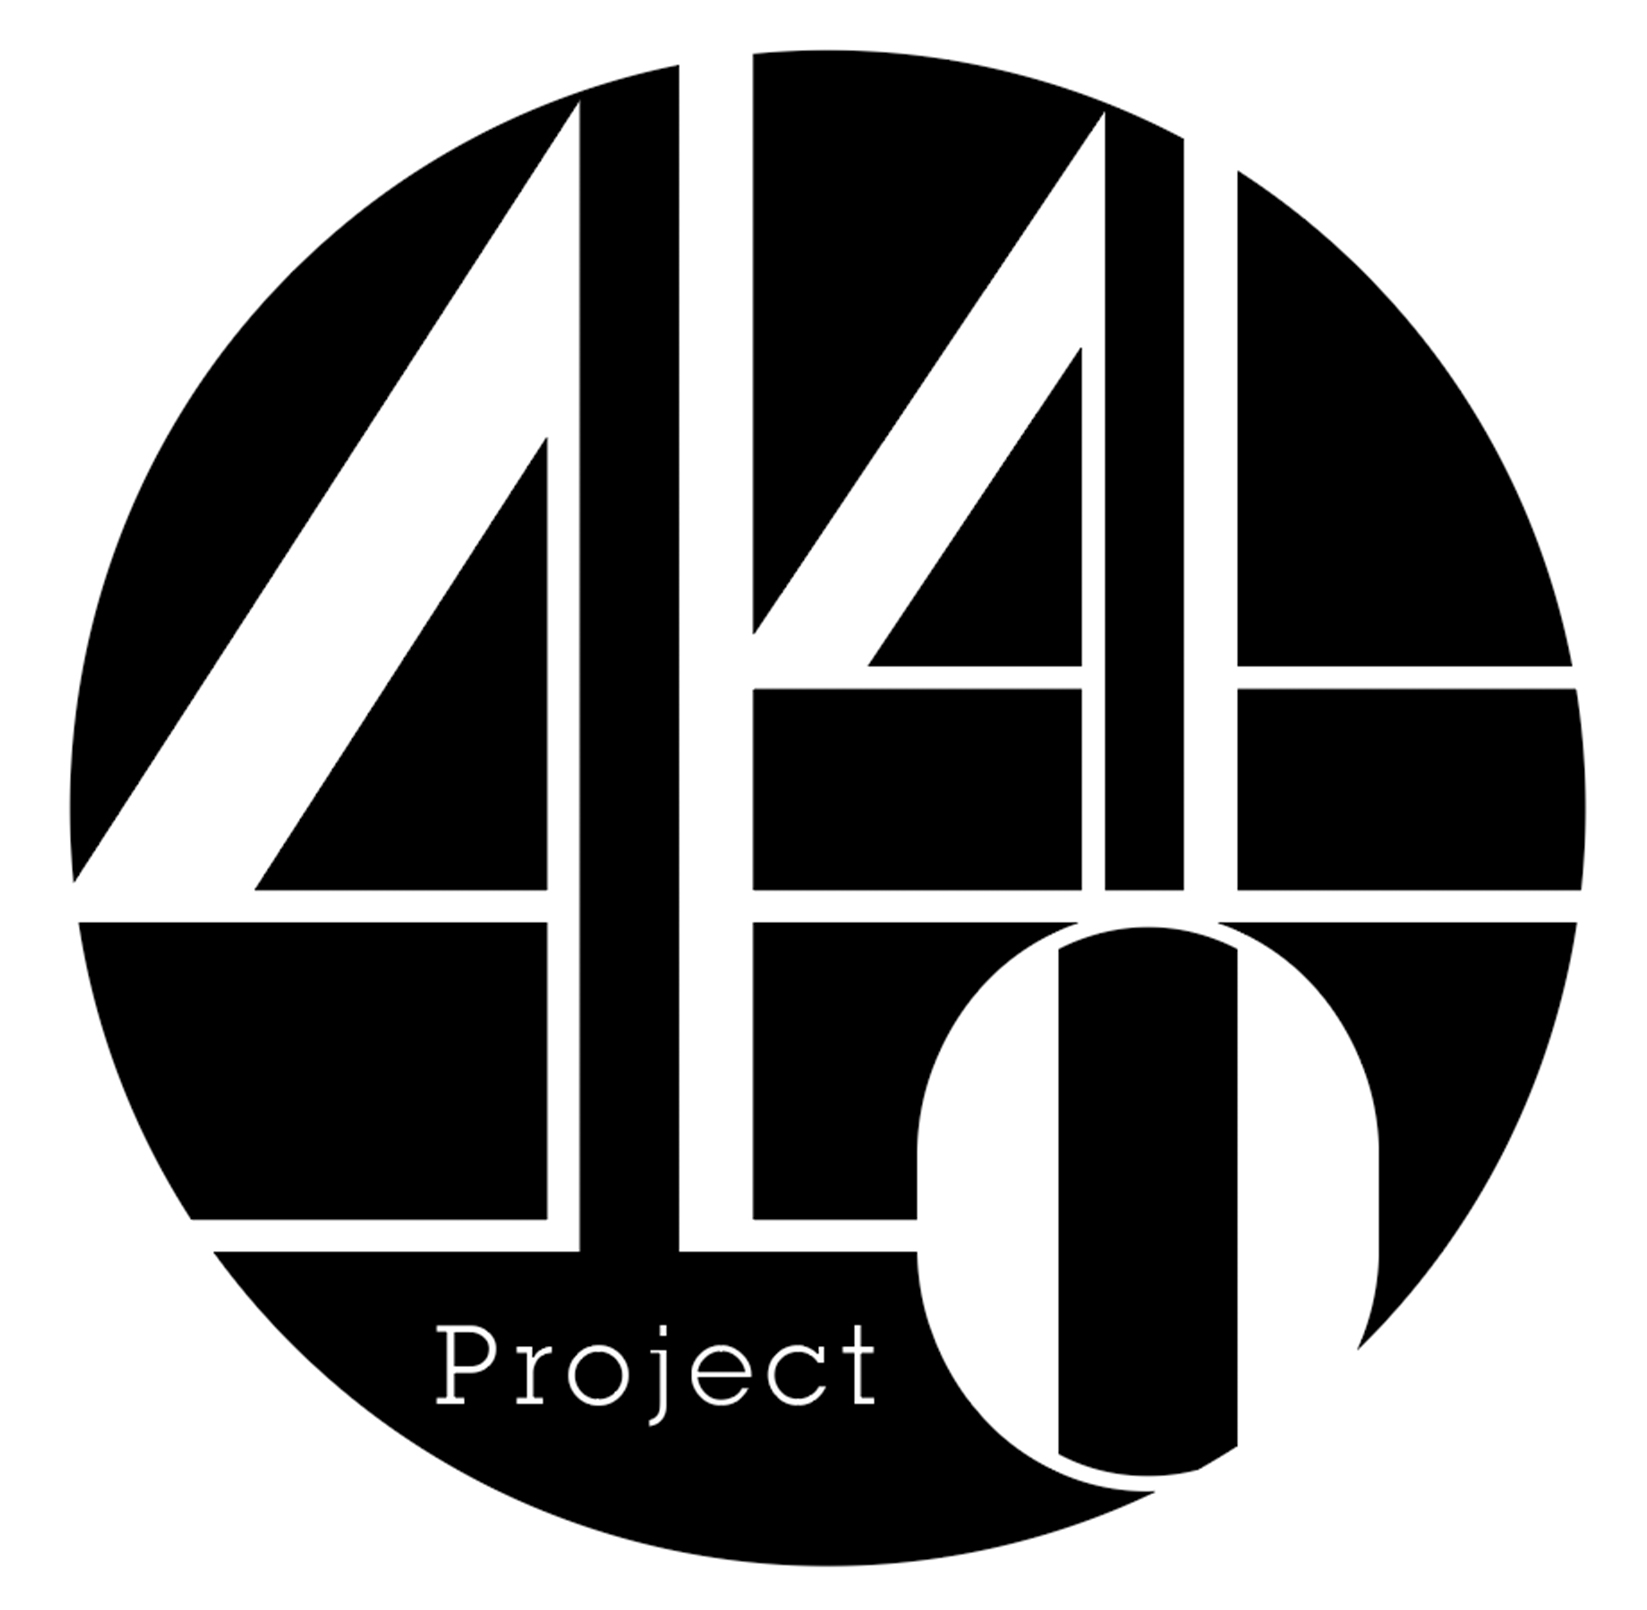 はじめまして、デザイン・写真・映像の制作会社 『440Project』と申します。